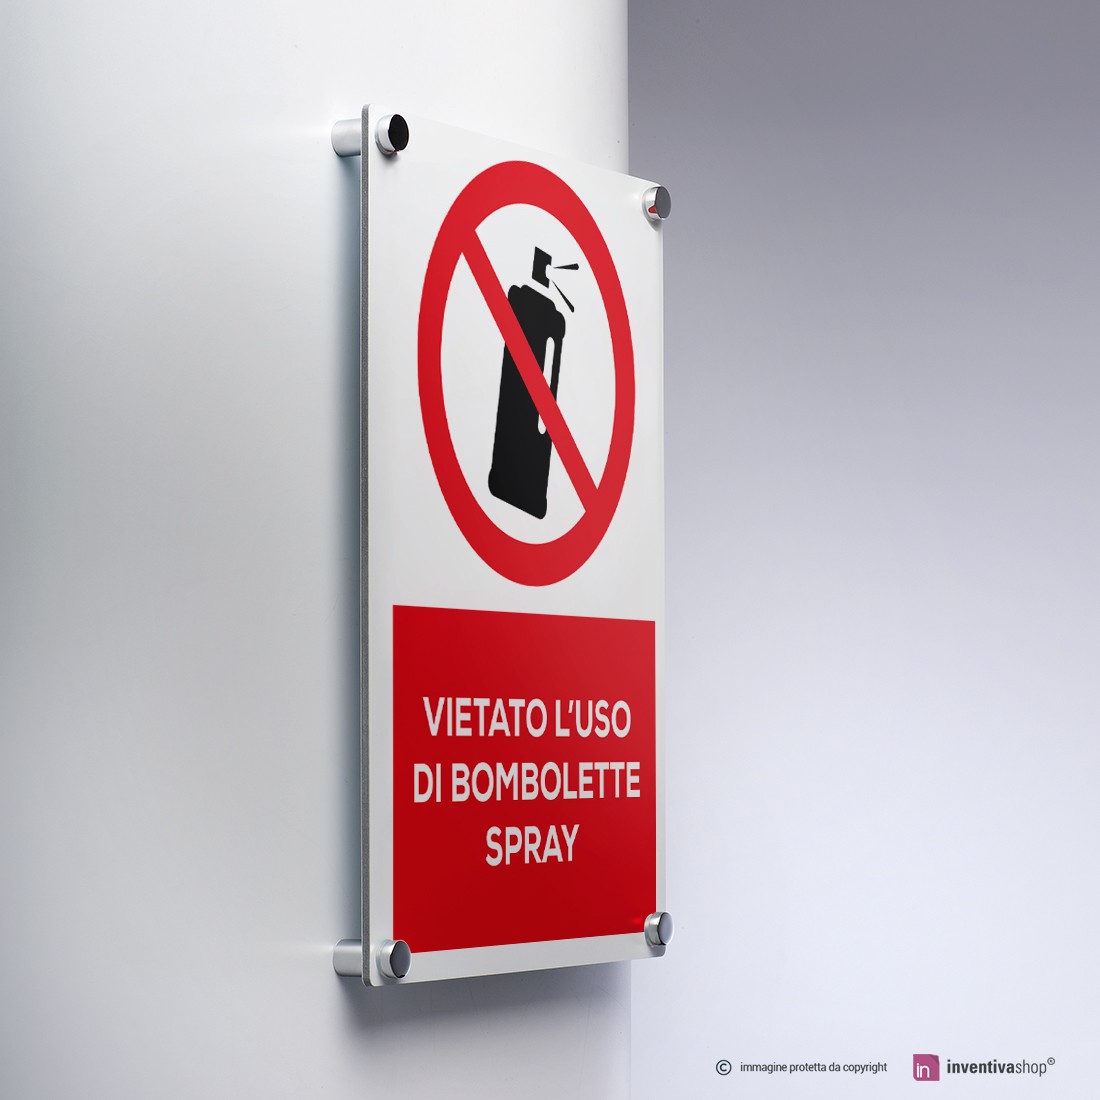 Carnevale: Recco vieta le bombolette spray - Il Secolo XIX